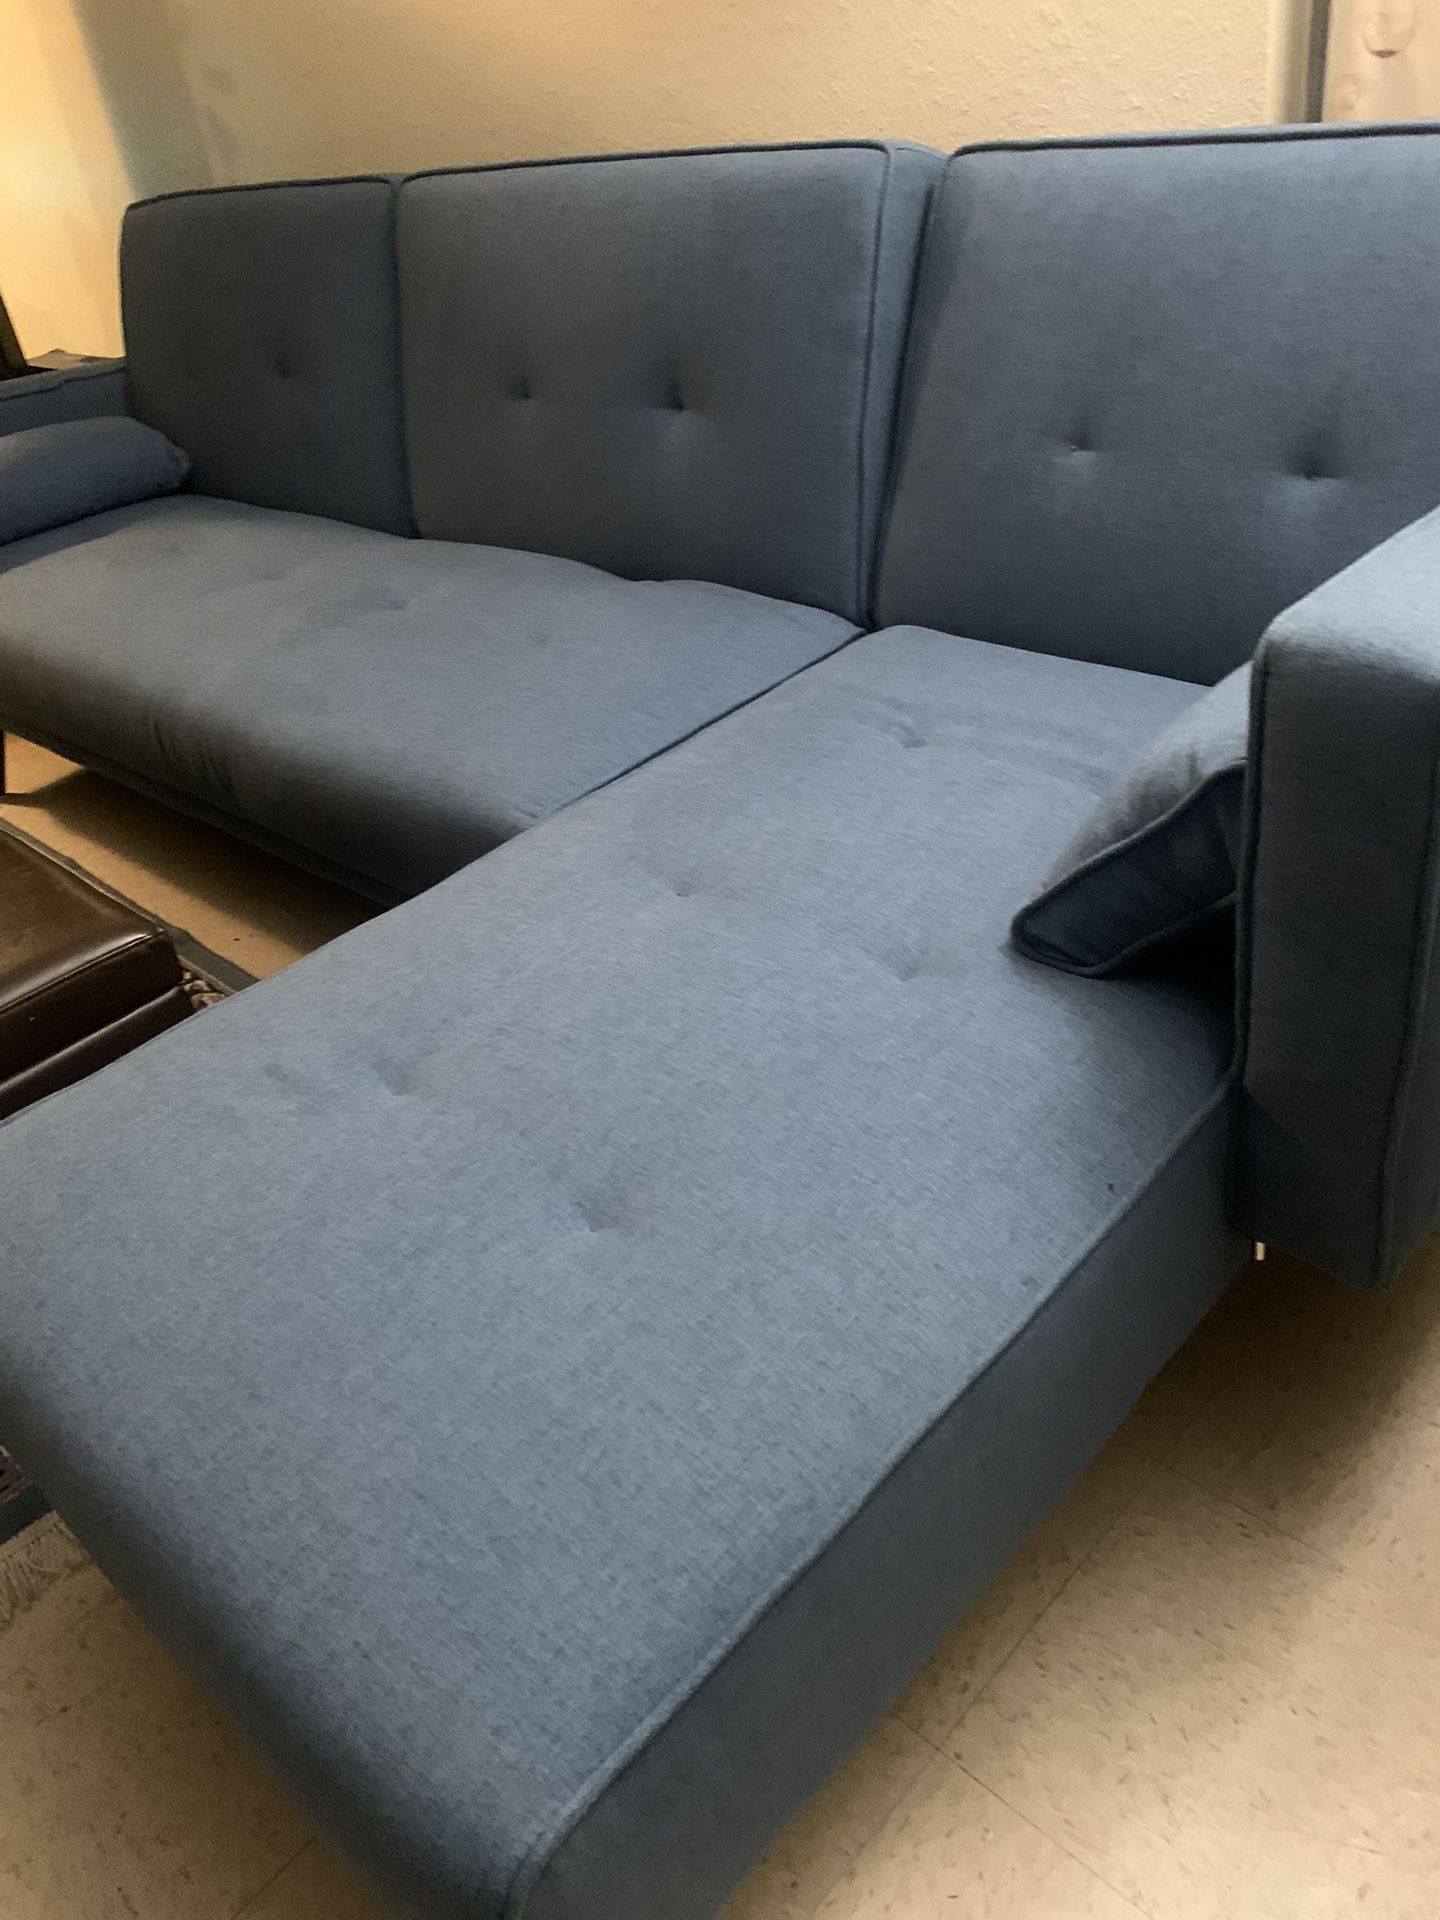 Sofa bed futon